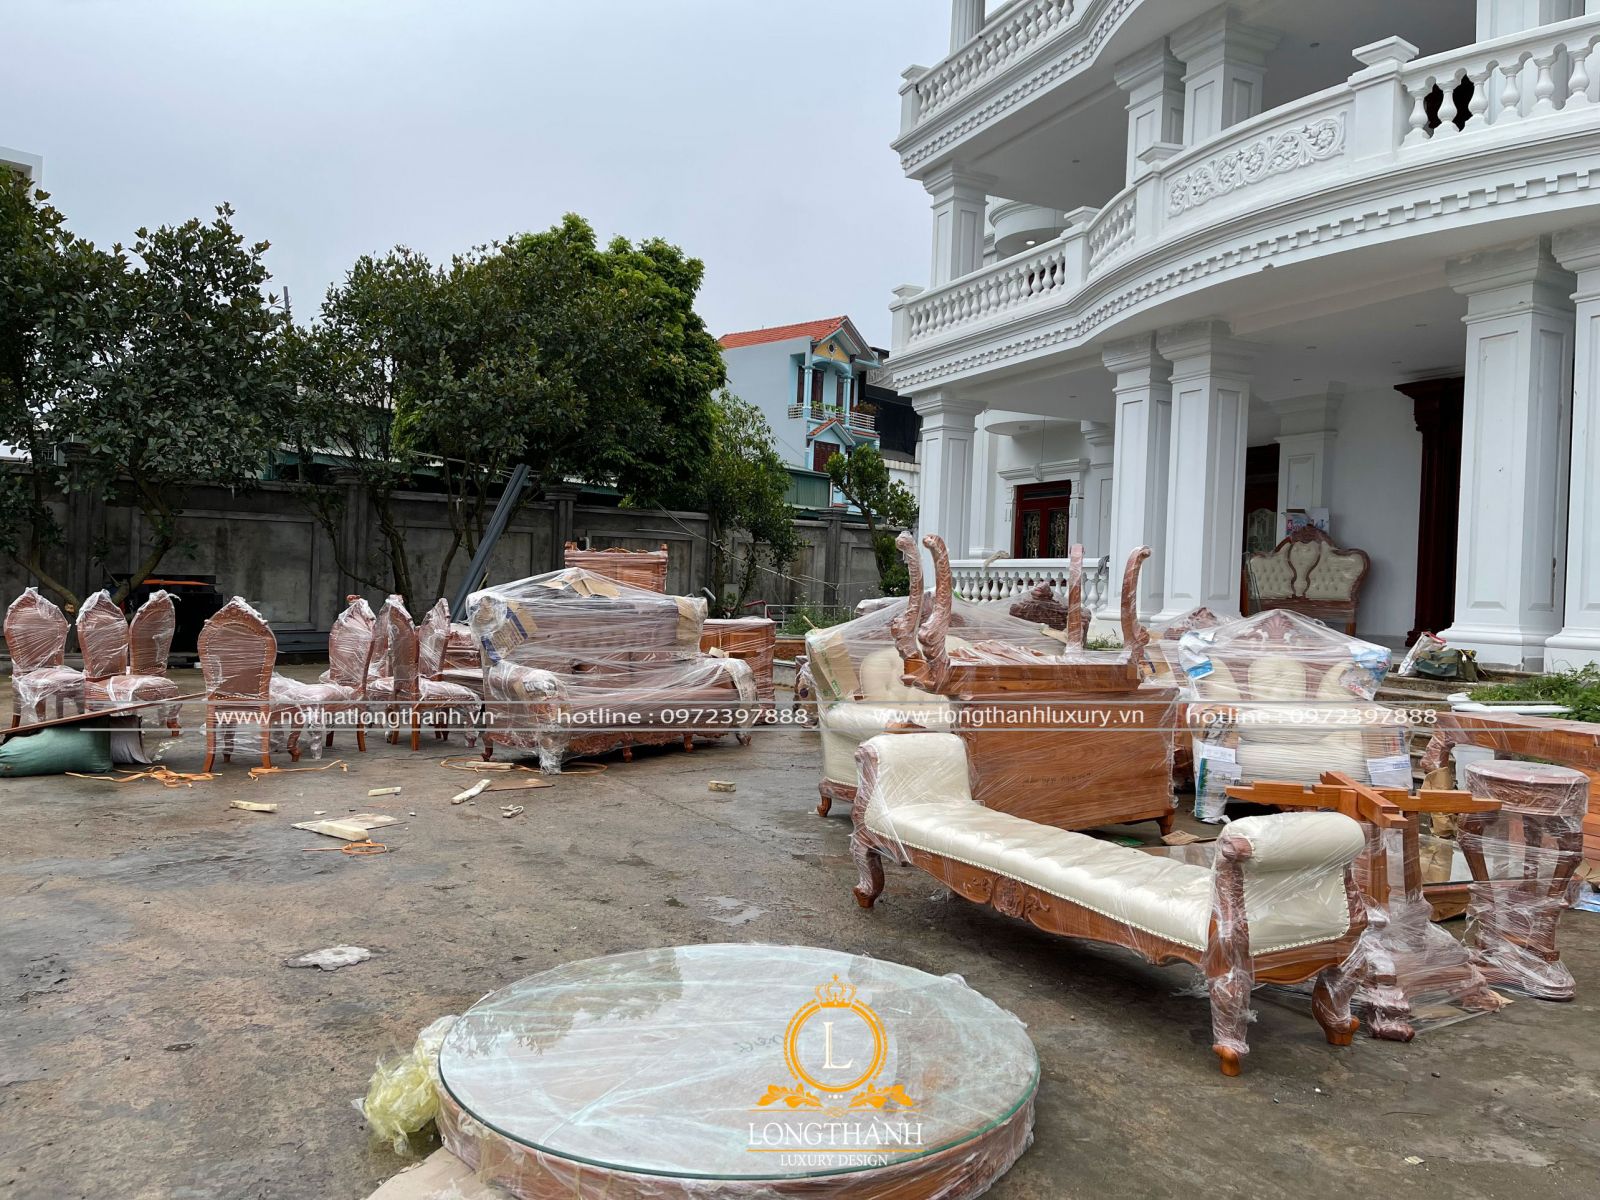 nhu cầu mua sắm bàn ghế ăn tân cổ điển tại Thái Nguyên tăng cao